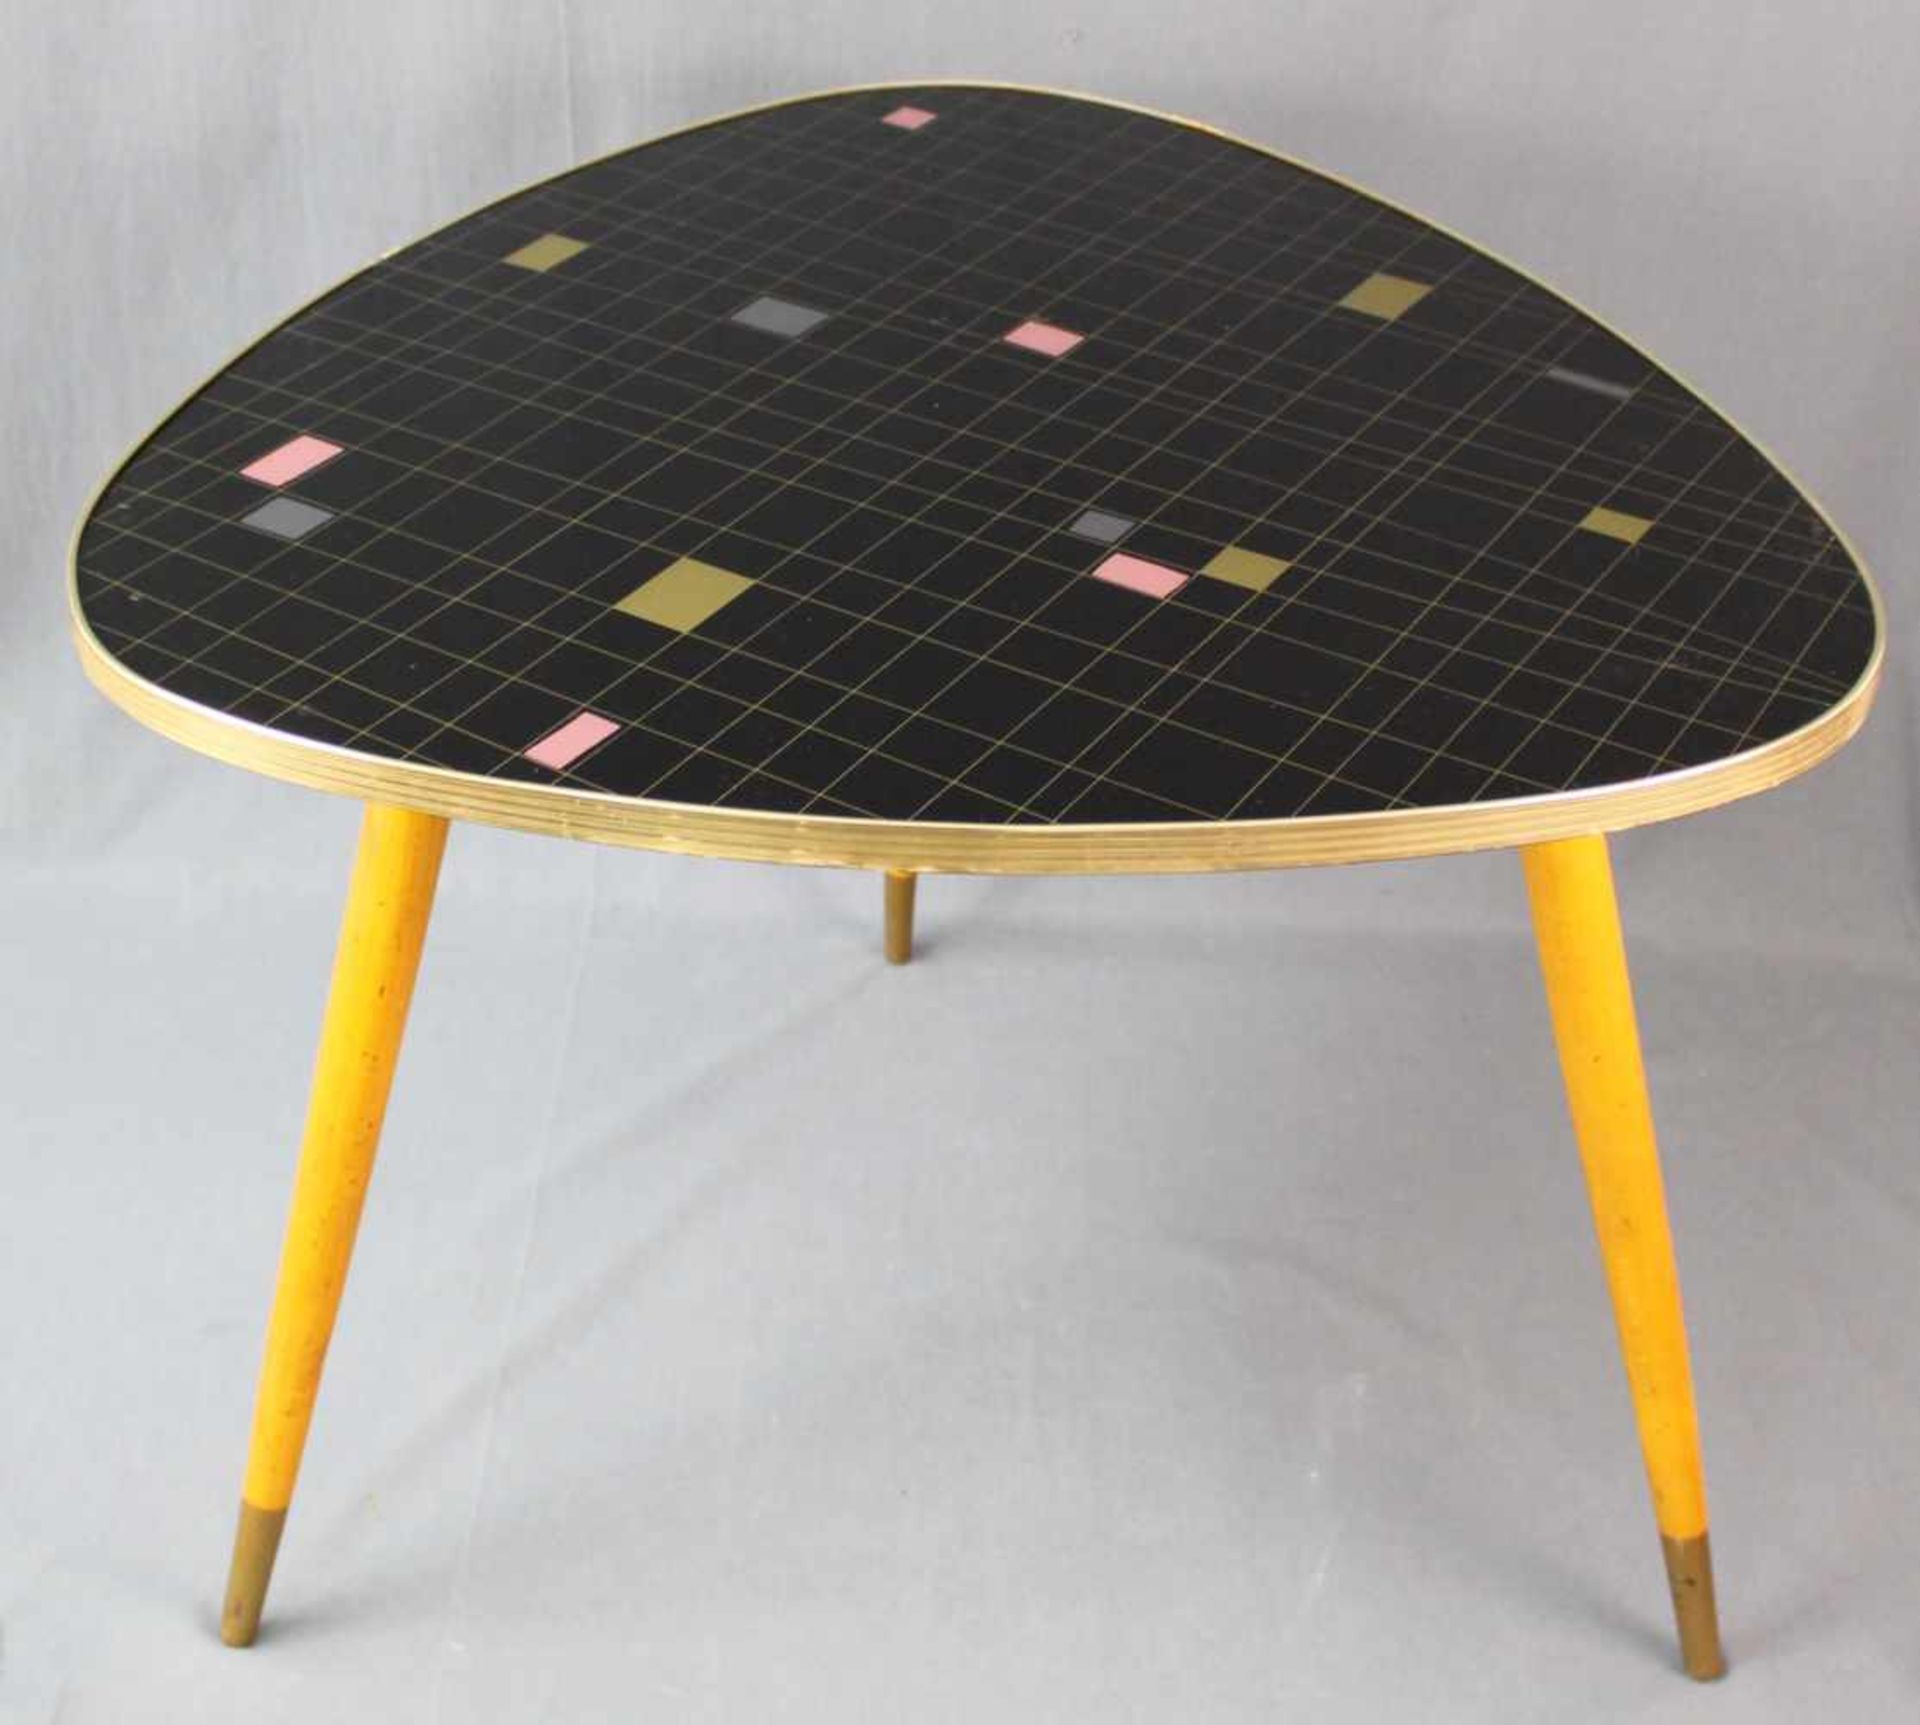 Beistelltisch, Design. Bunte Ausführung. Um 1970. 70 cm x 70 cm, 60 cm. Side table, design. 70 cm